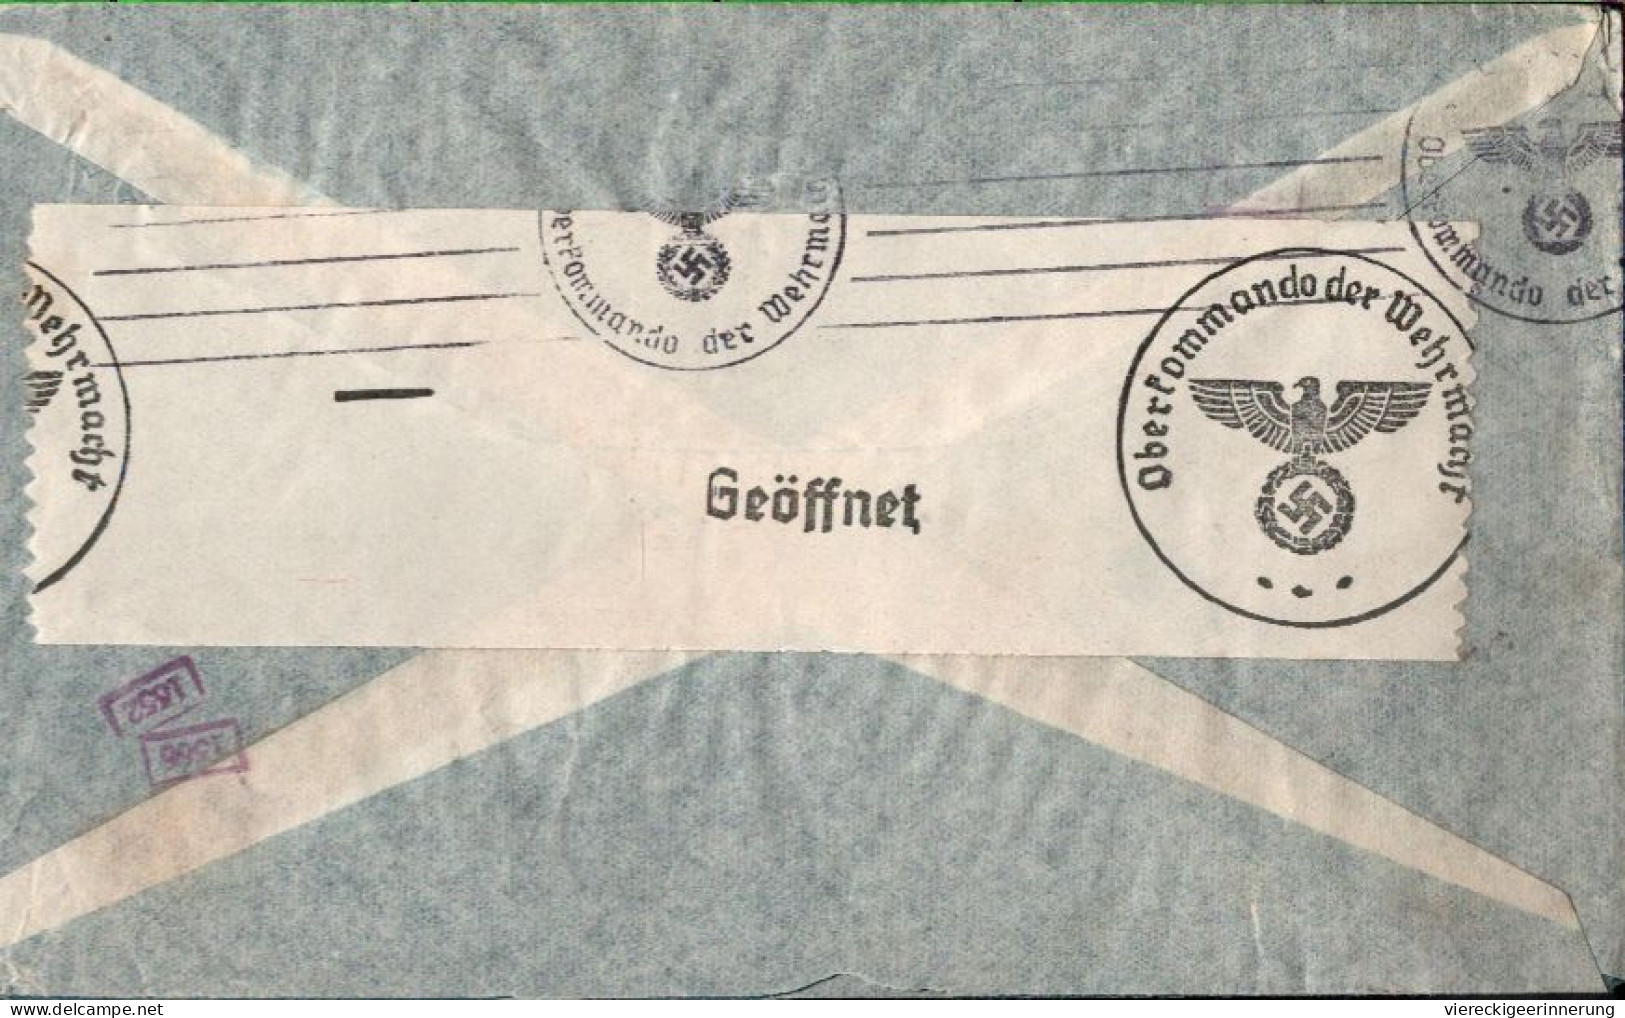 ! Argentinien 1940 Luftpost Brief Aus Buenos Aires Nach Berlin Mit OKW Zensur, Censor Mark, Airmail Via Condor - Brieven En Documenten